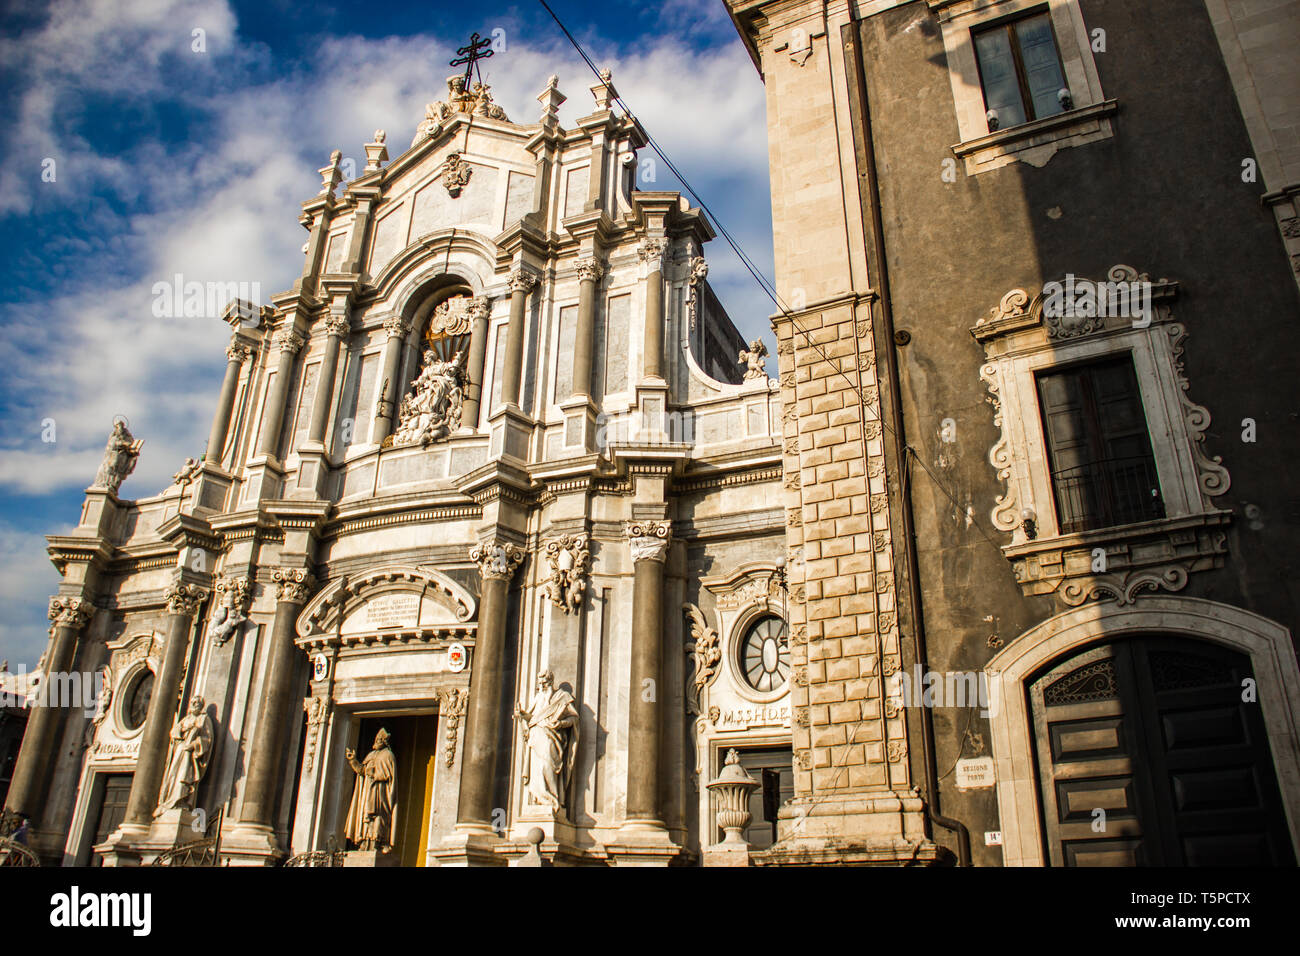 Die Kathedrale von Catania Fassade und barocke Architektur Gebäude in der Nähe von Stockfoto